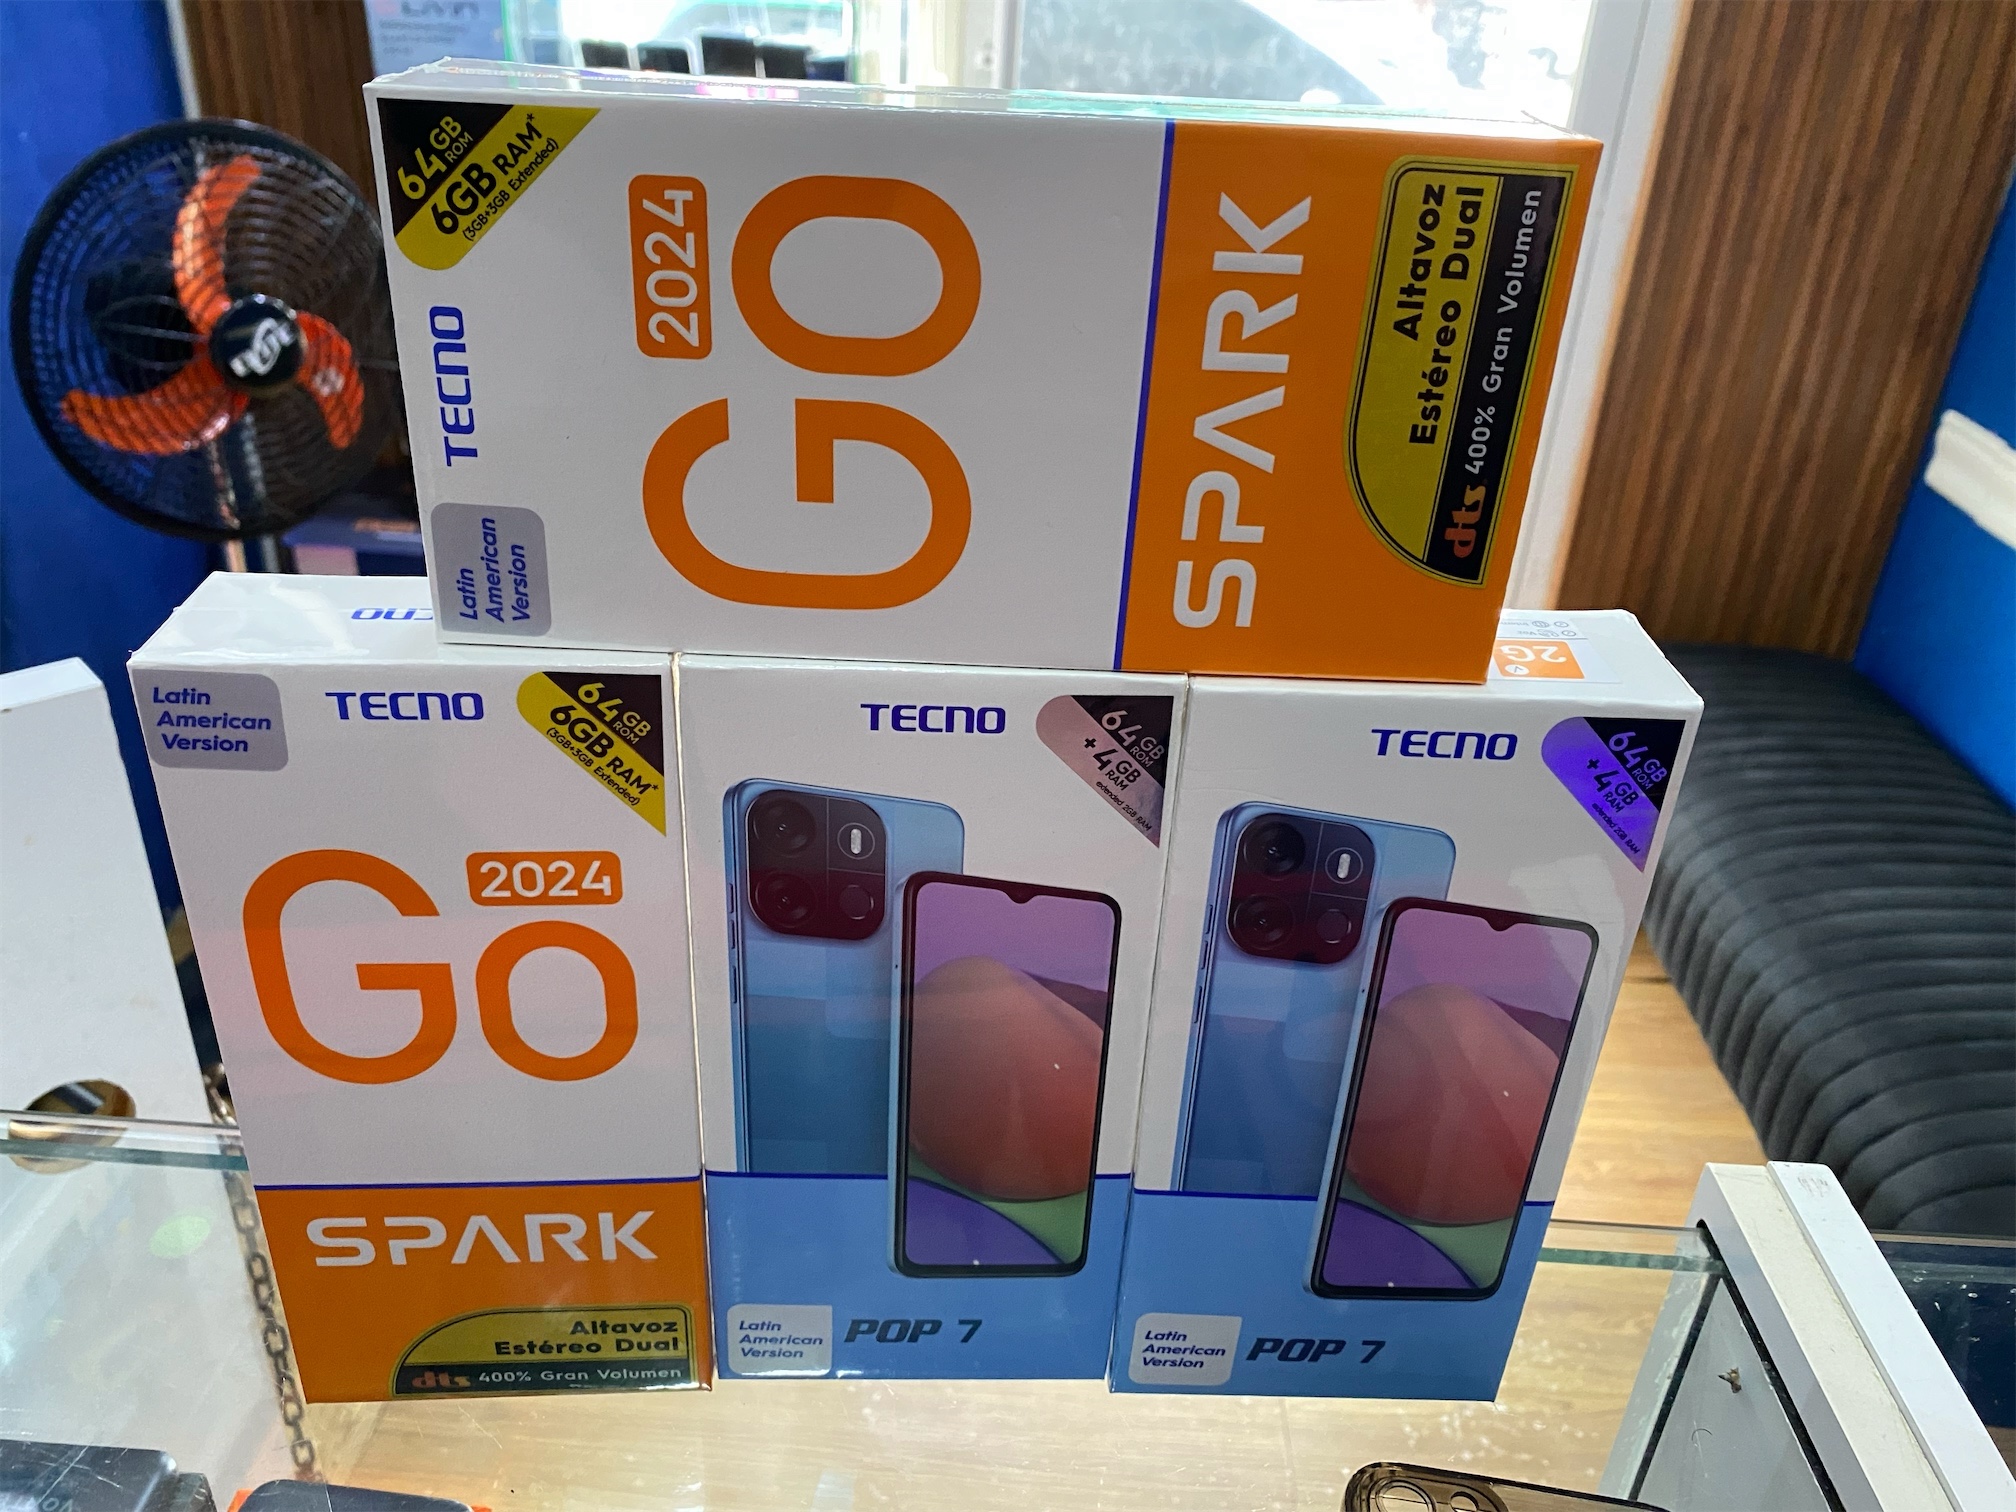 celulares y tabletas - Tecno pop 7 tecno goo spark 2024 64Gb  4